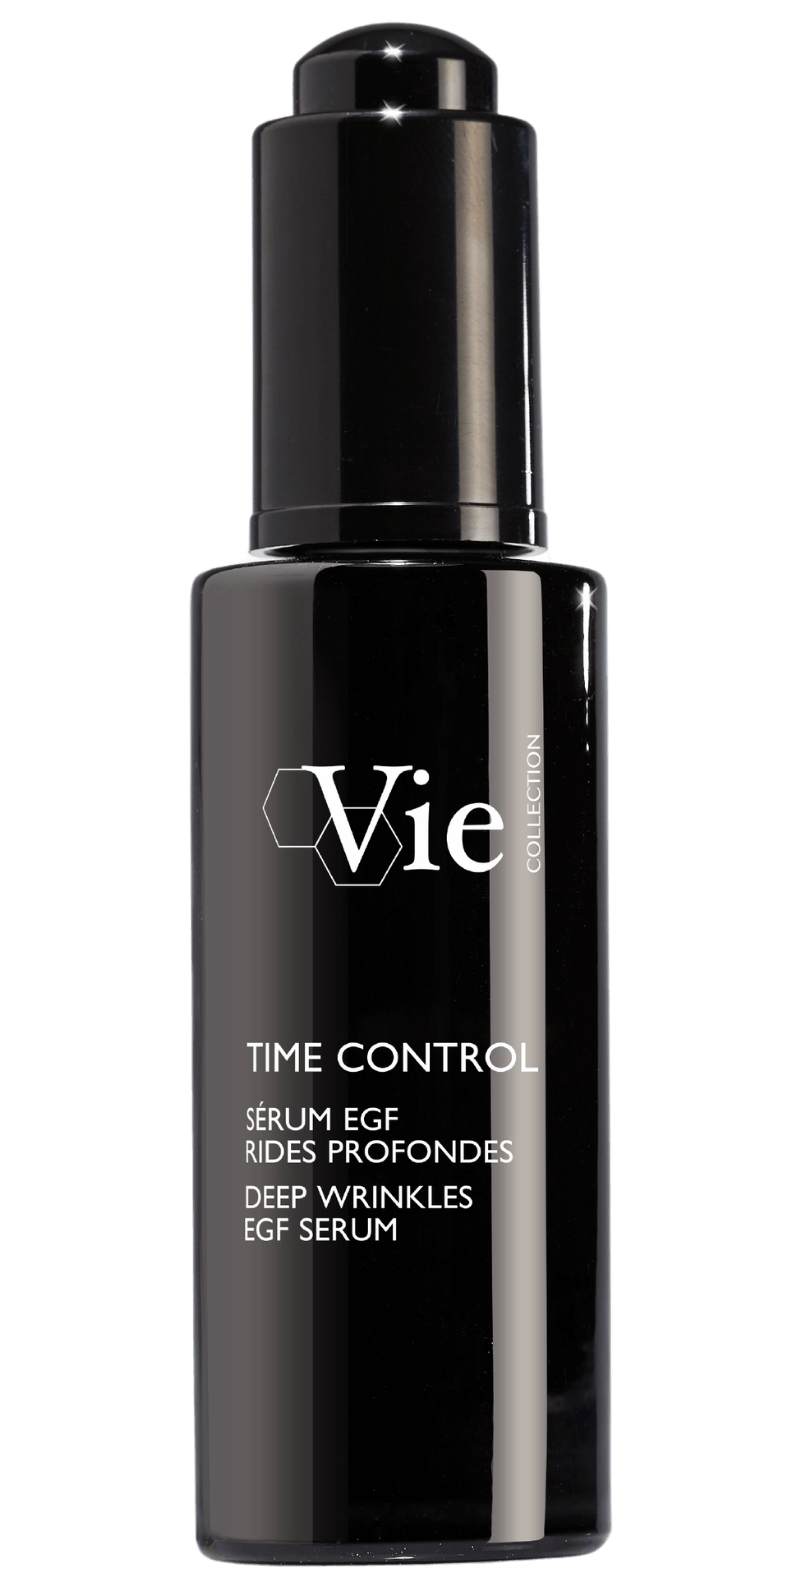 's Vie Time Control Deep Wrinkles EGF Serum - Bellini's Skin and Parfumerie 